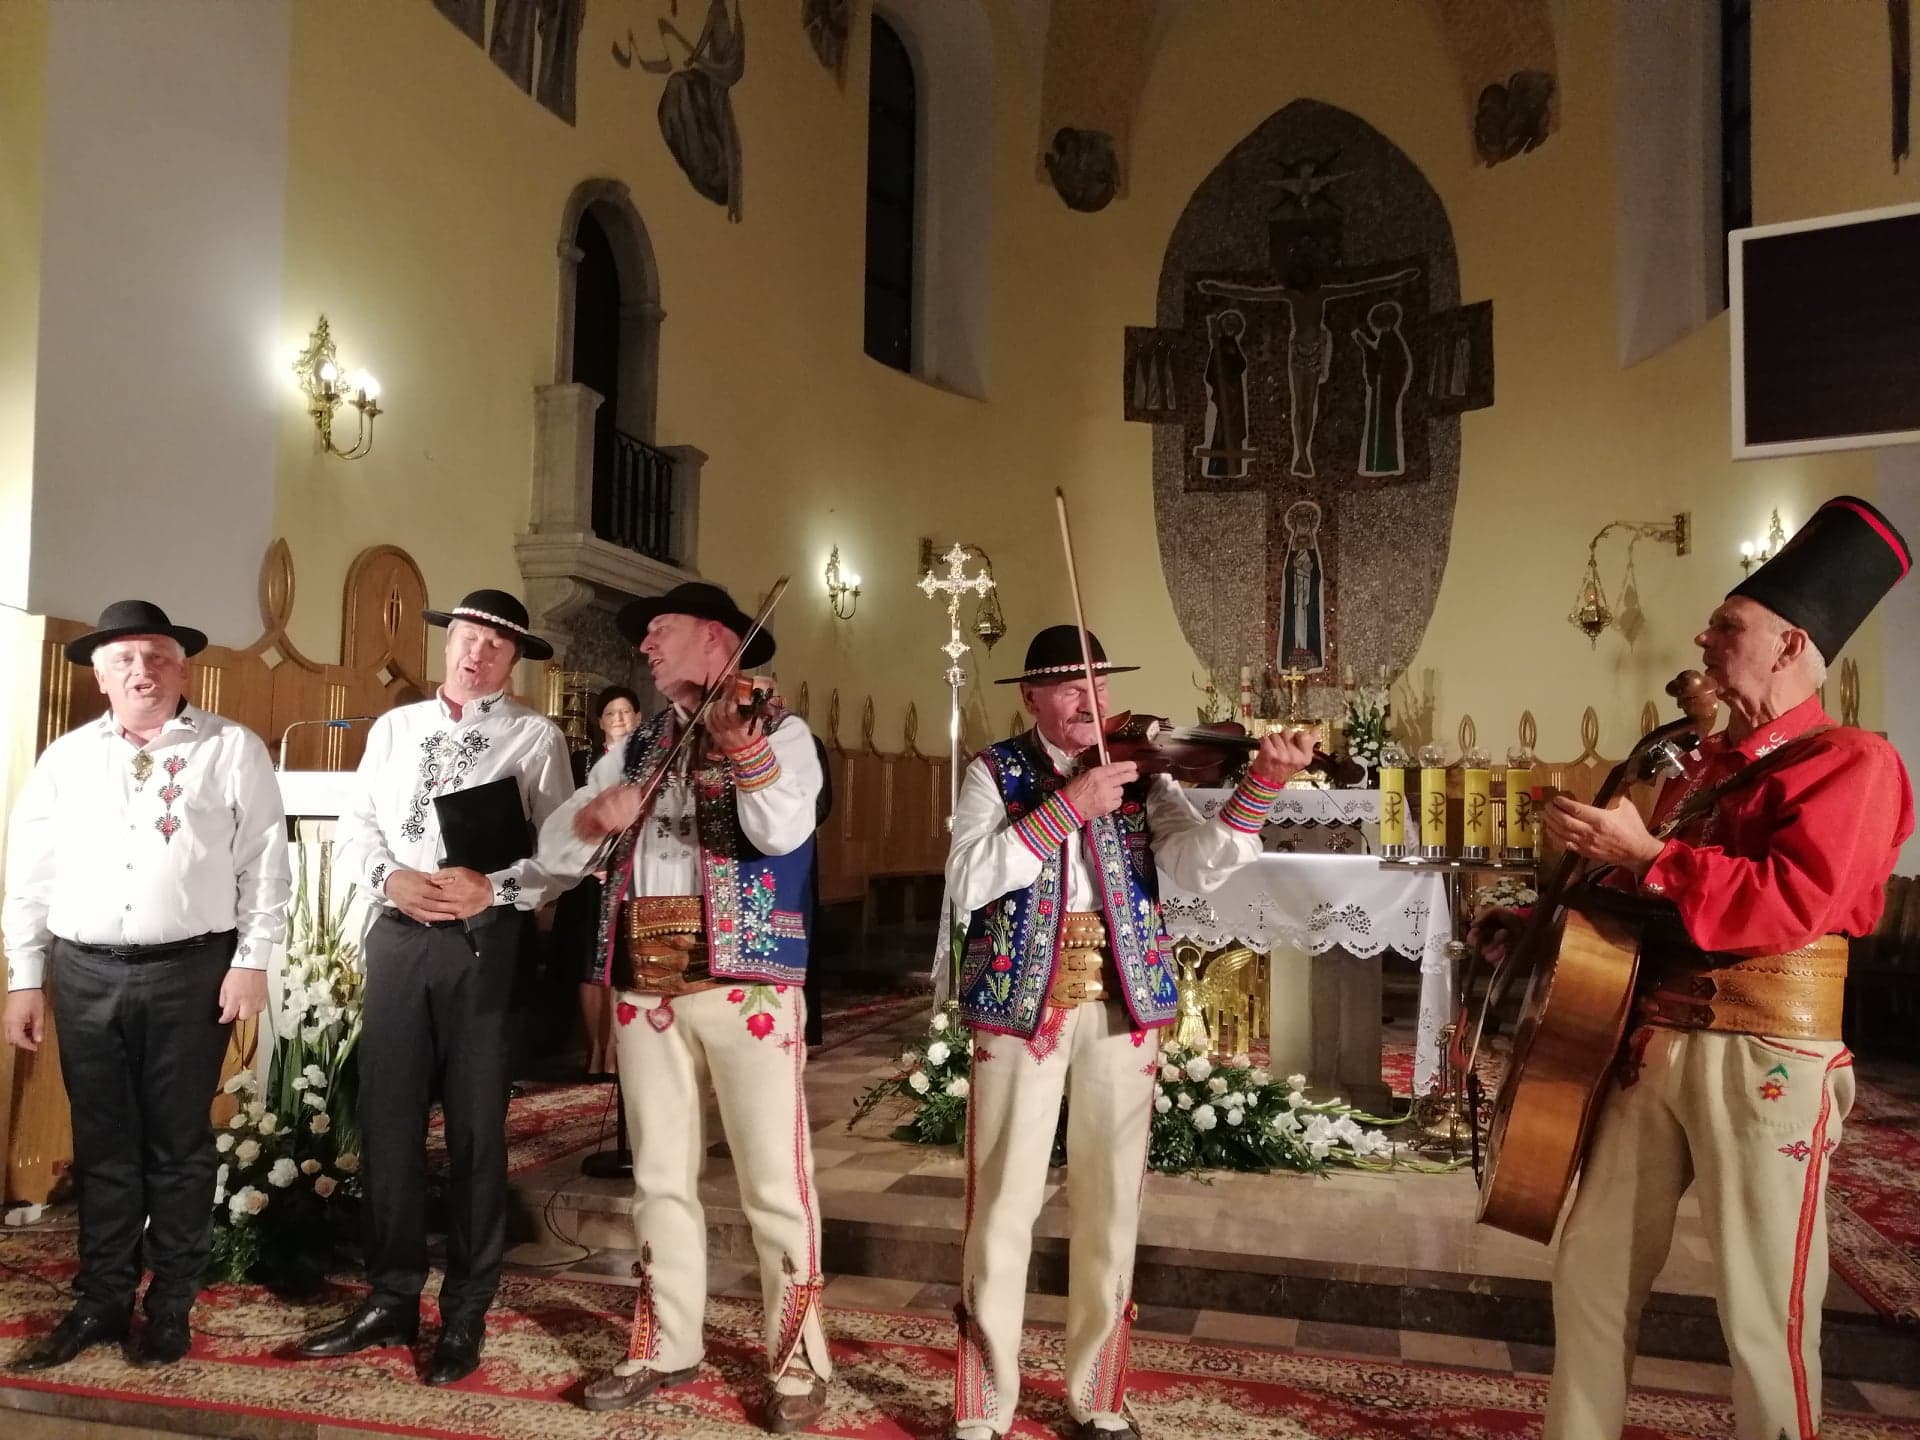 W ramach projektu „Koło kultury” w Żabnie odbył się wyjątkowy koncert, który nawiązywał do rodzimych korzeni społeczeństwa małopolskiego.